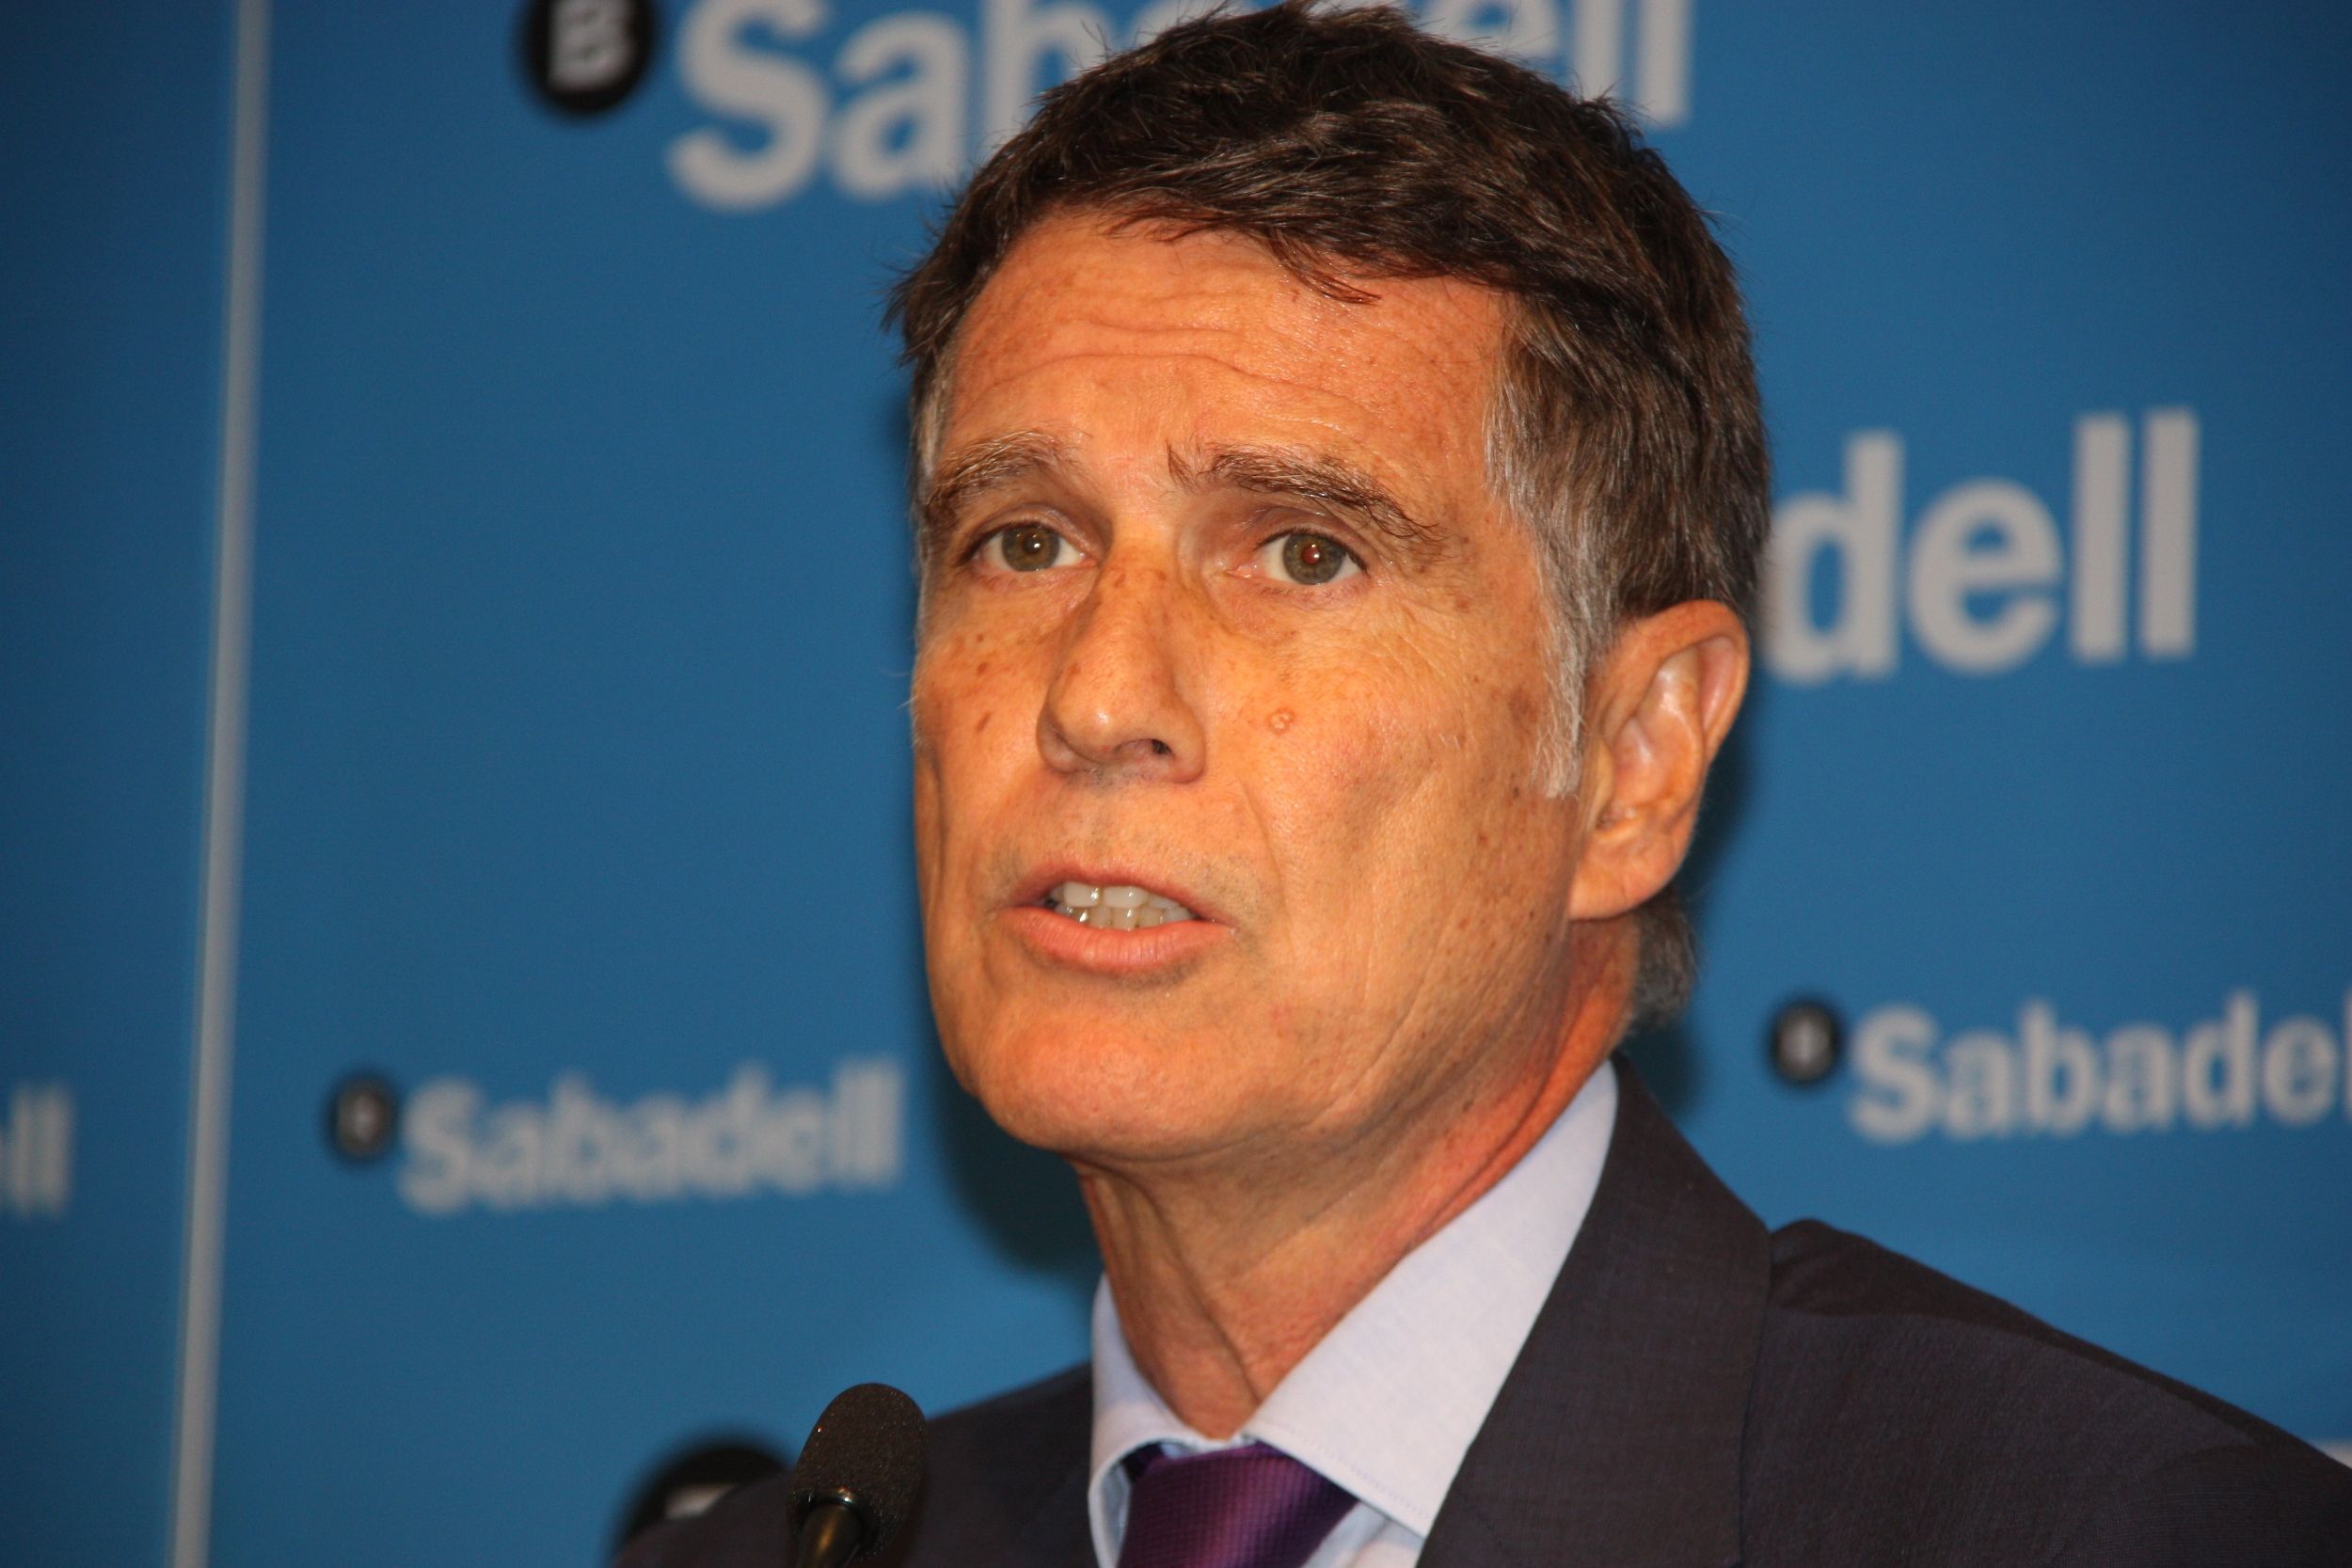 Banc Sabadell gana 425,3 millones y mantiene el rumbo tras el Brexit